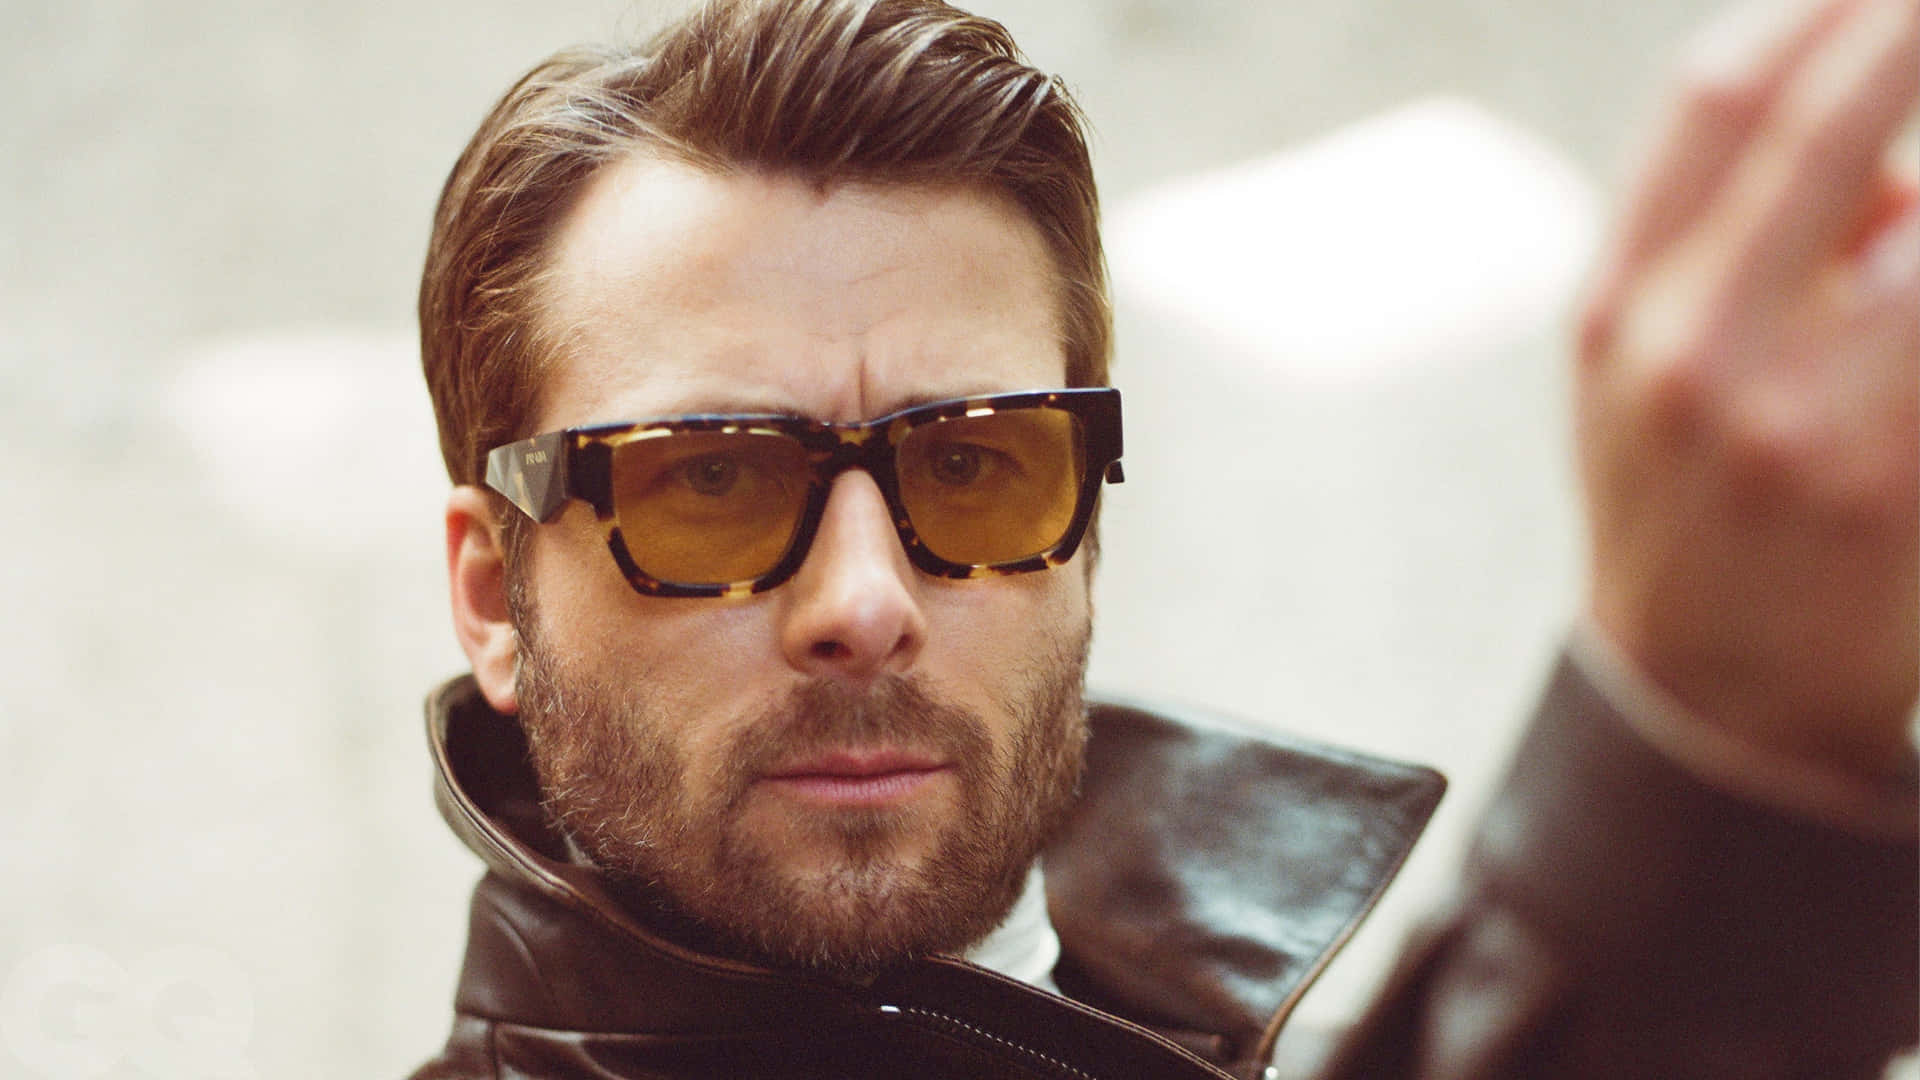 Stylish Manin Leather Jacketand Sunglasses Wallpaper